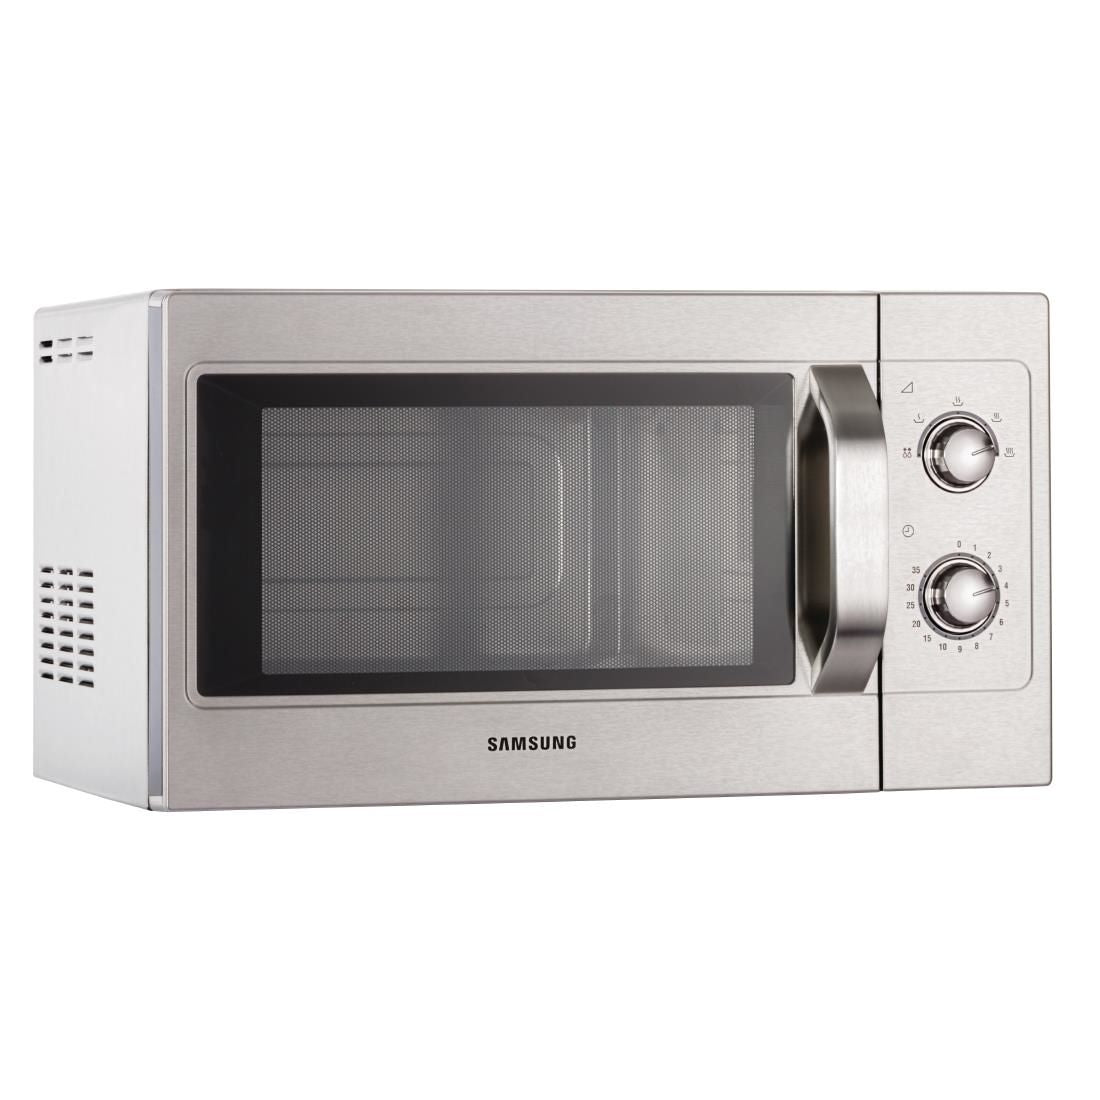 (Availability 23/05/23) Samsung 1100W Light Duty Microwave Oven CM1099